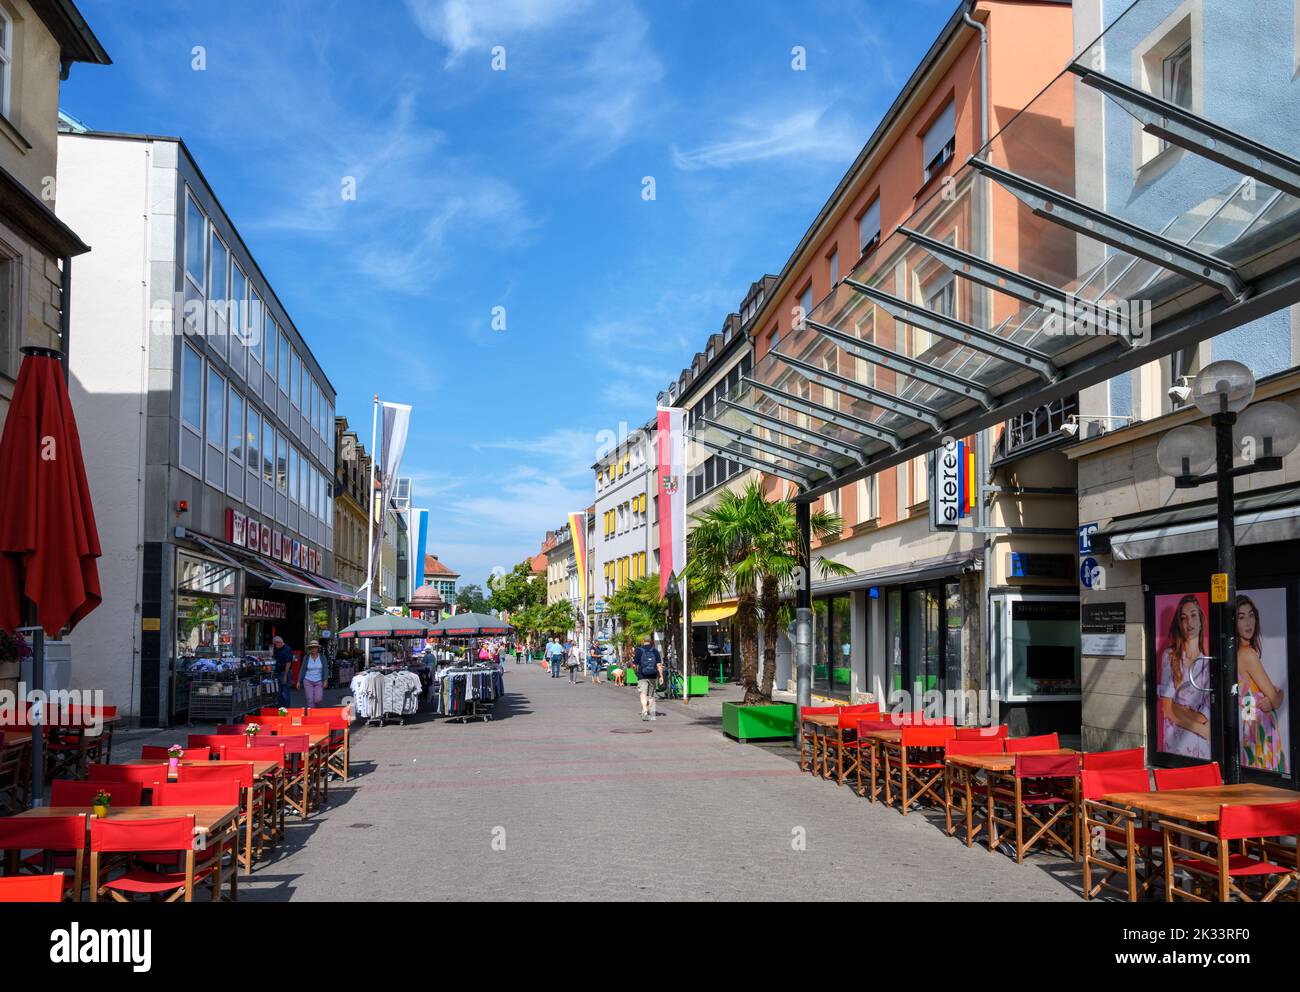 Geschäfte in der Richard-Wagner-Straße, Bayreuth, Bayern, Deutschland Stockfoto